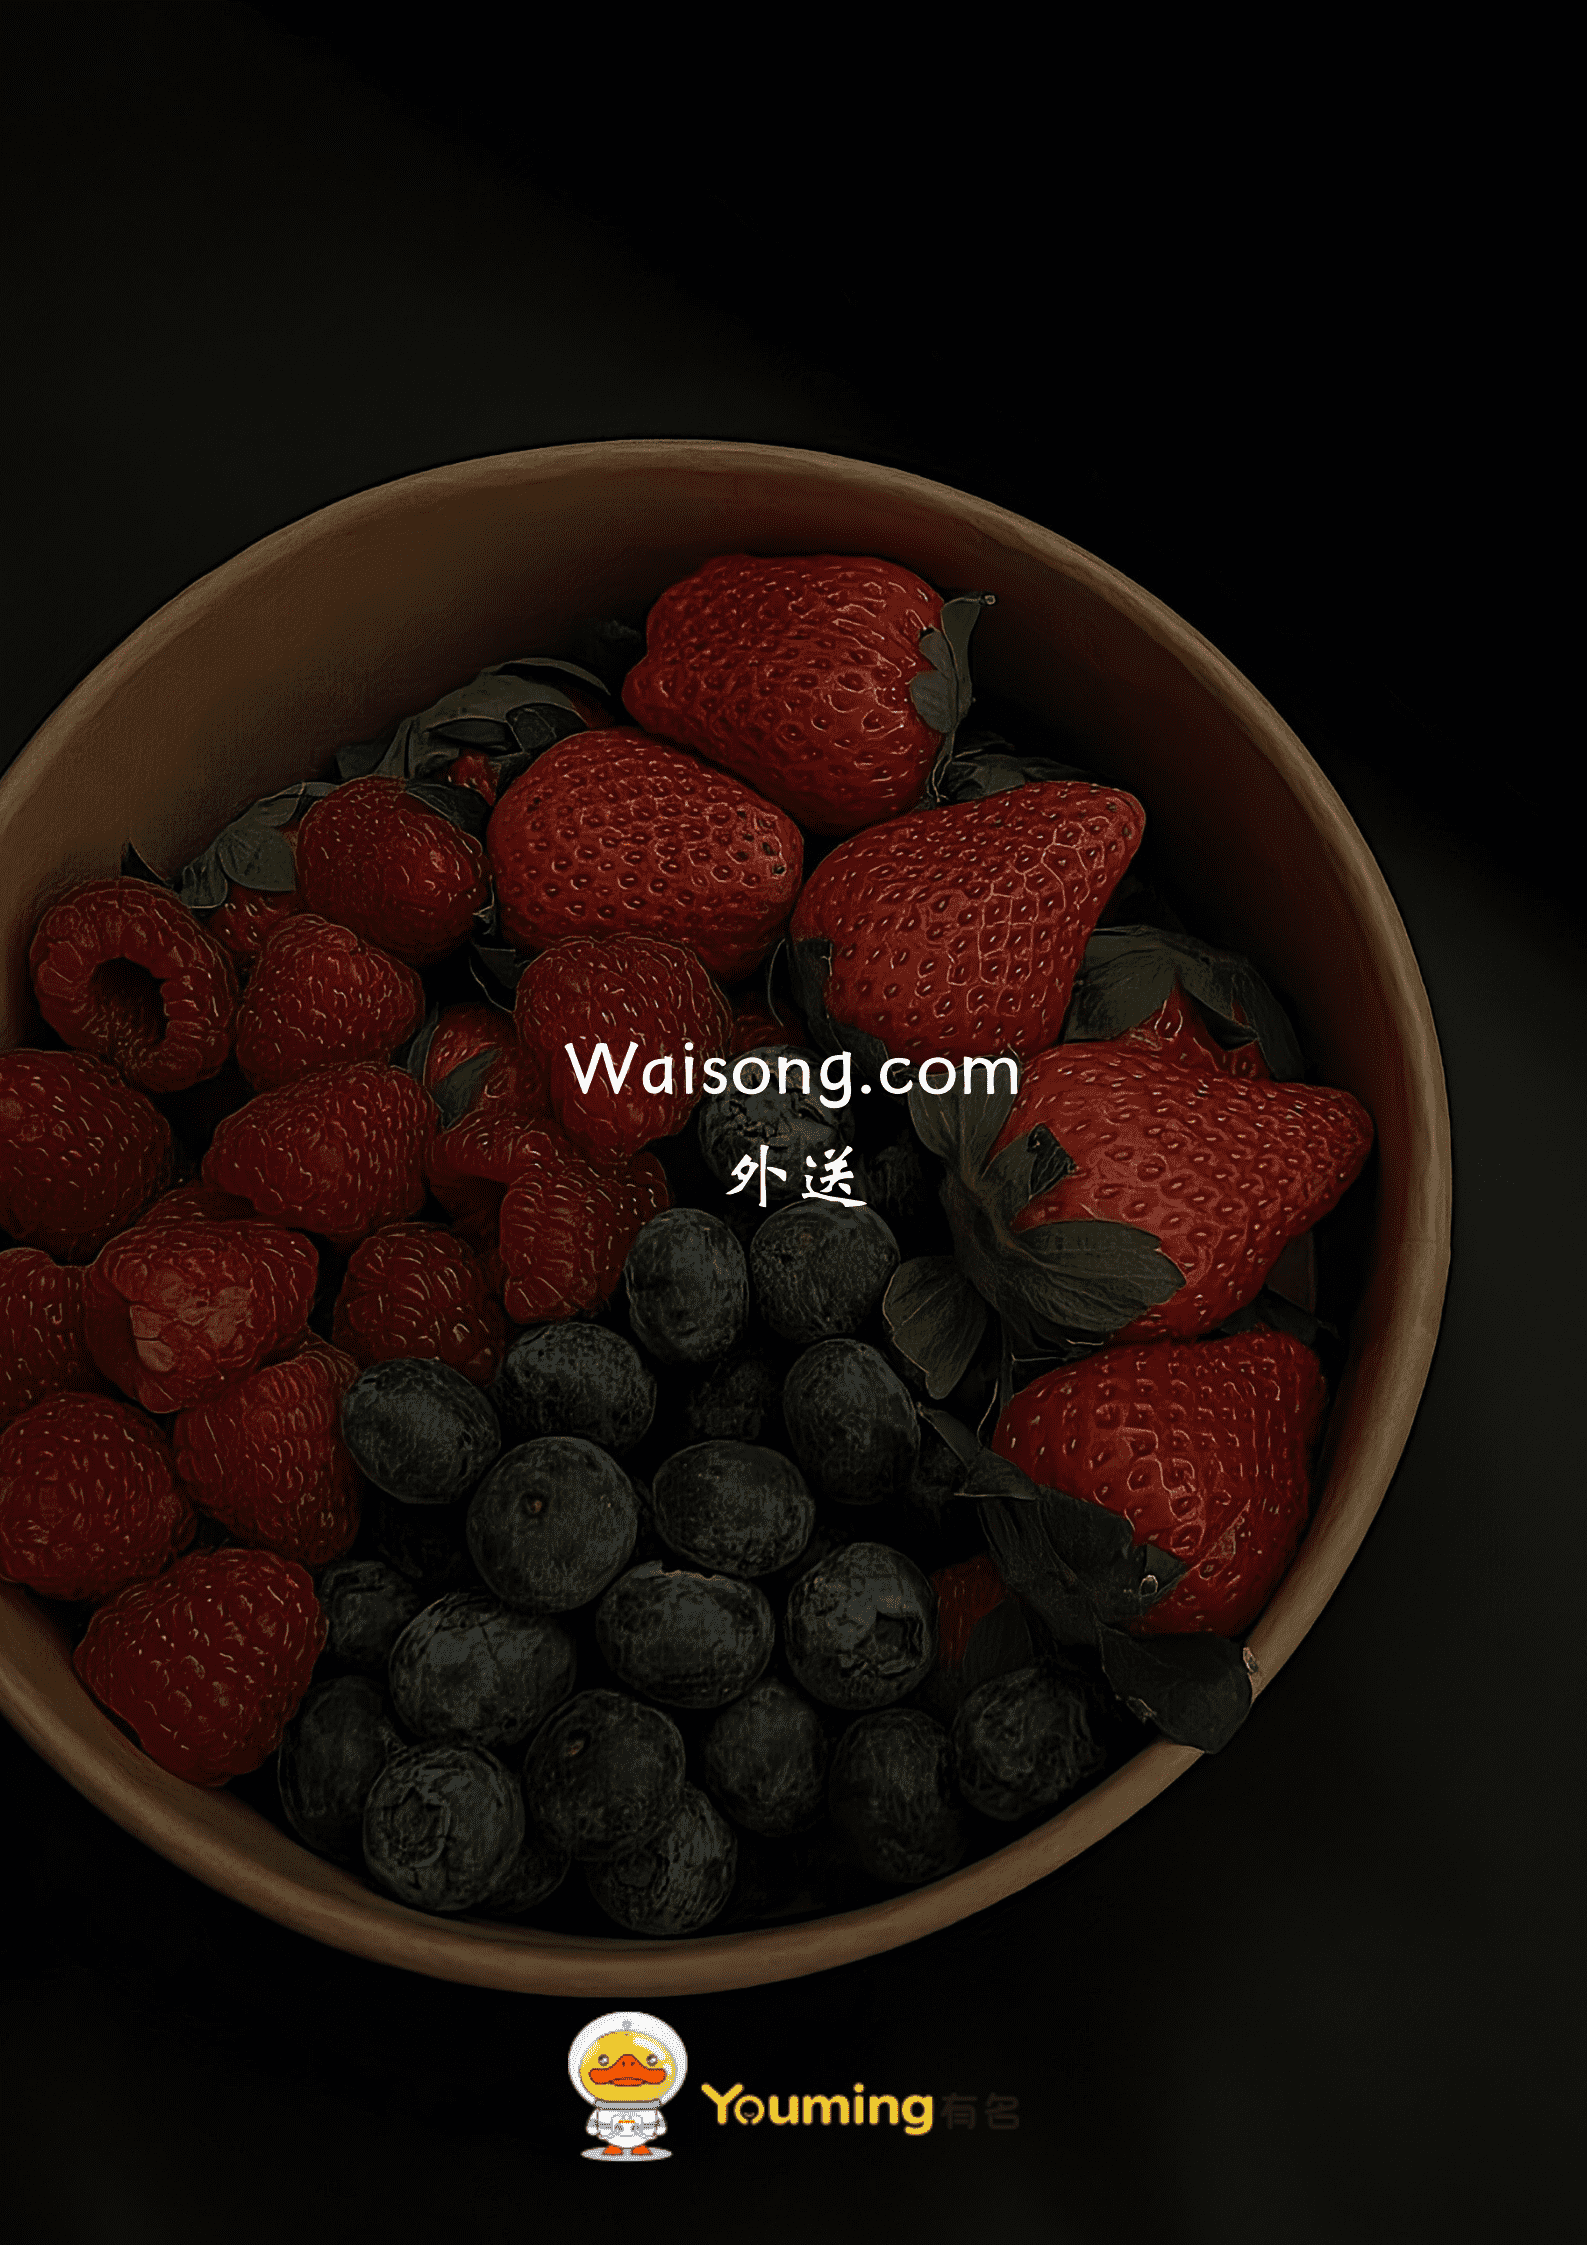 waisong.com